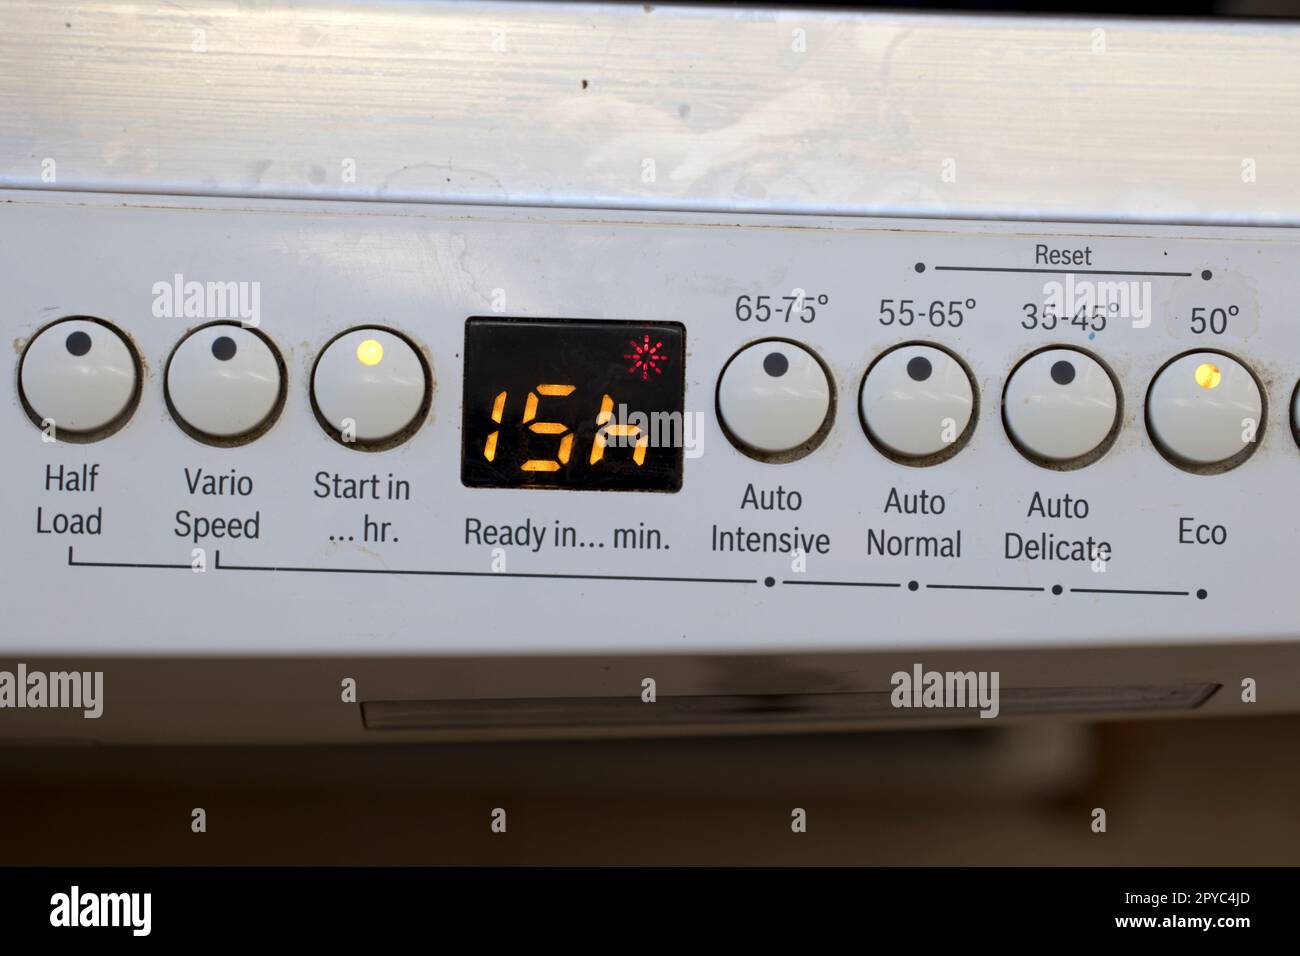 Pannello di informazioni sulla lavastoviglie Bosch con ritardo di 15hr ms per consentire al dishwqasher di funzionare con energia elettrica notturna a basso costo Foto Stock